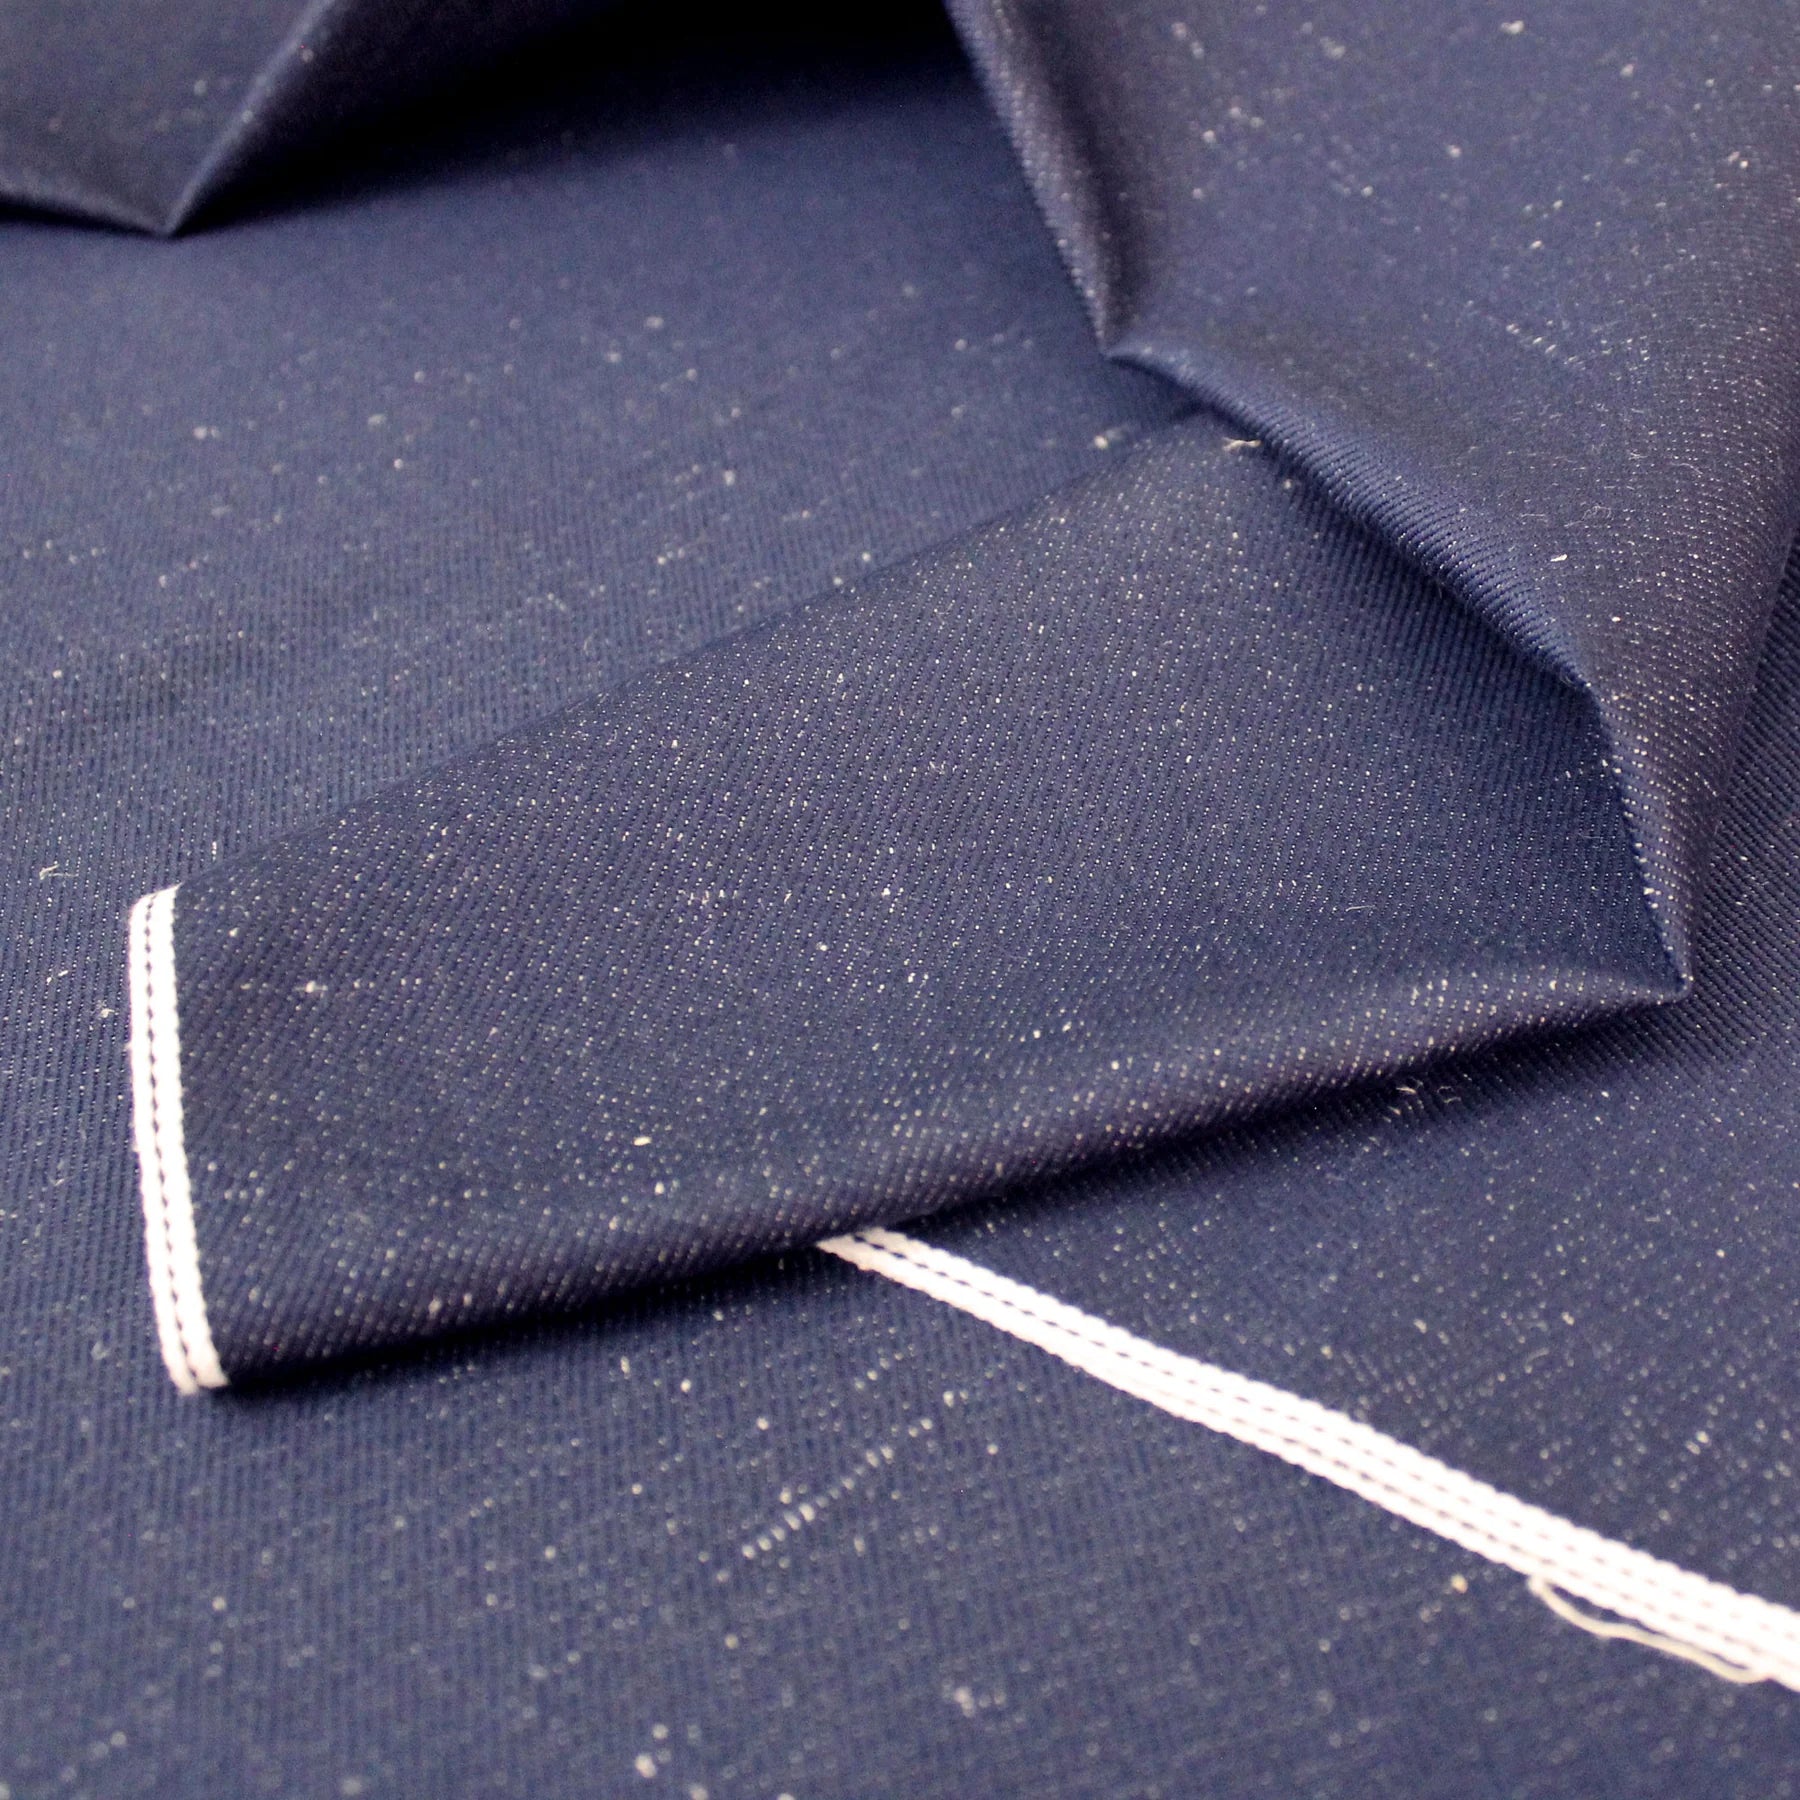 Coupon de tissu bleu jean en chanvre et coton 95 x 240 cm